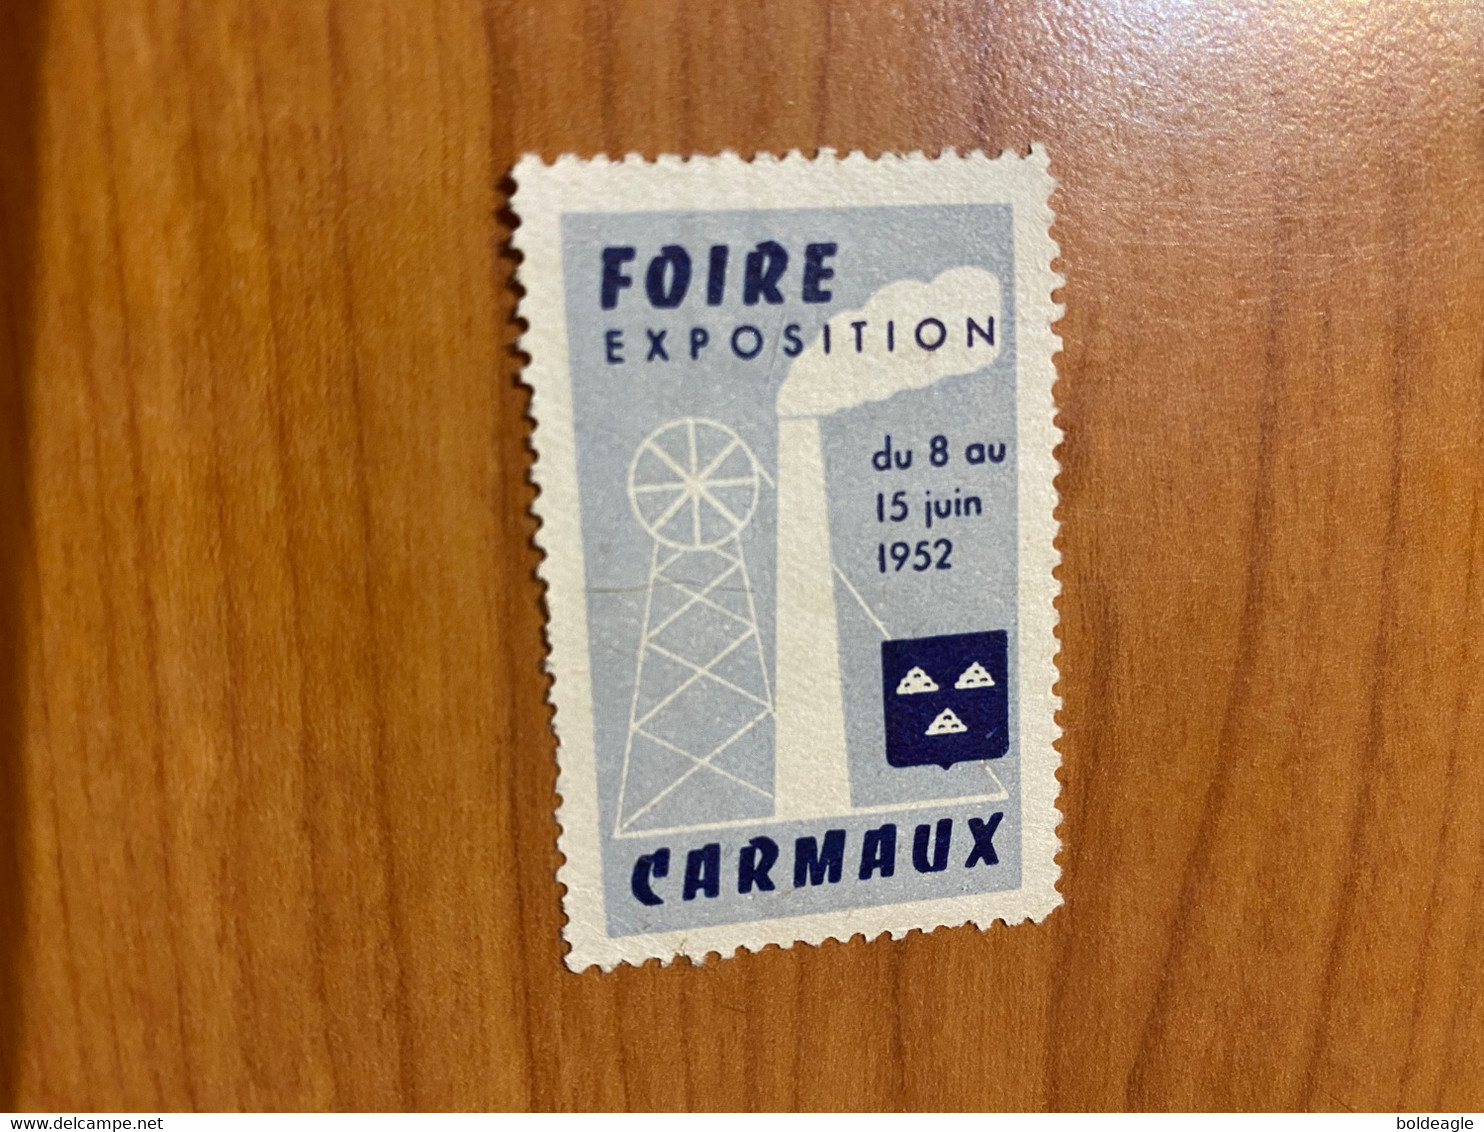 Vignette - Foire Exposition Carmaux 1952 - Tourisme (Vignettes)